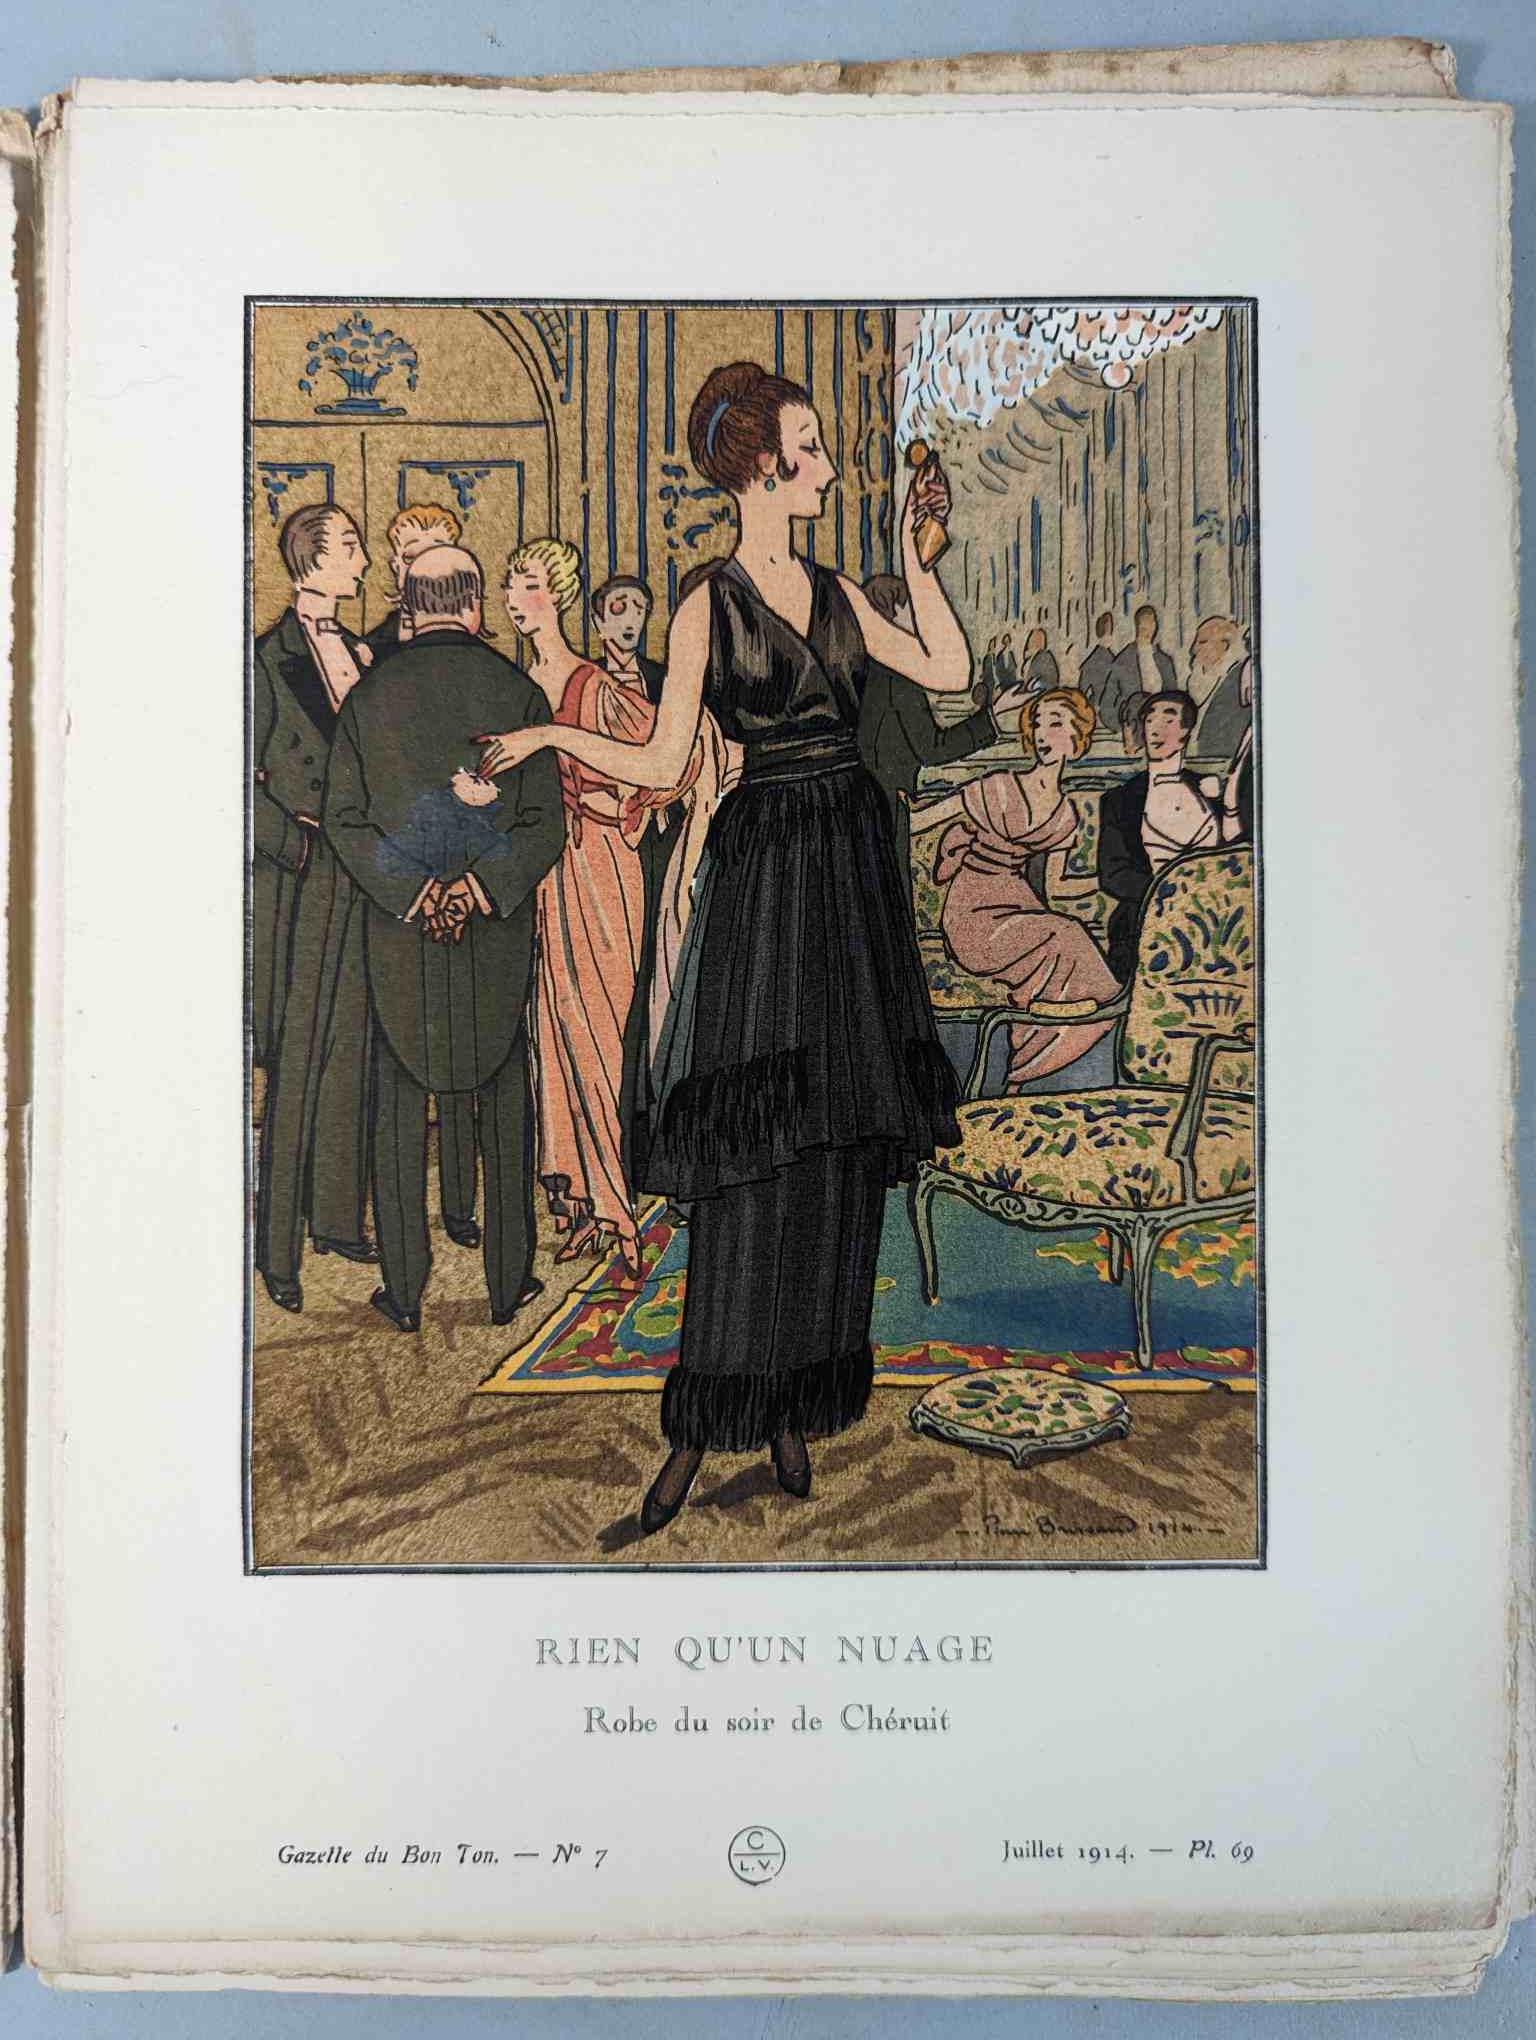 FASHION. VOGEL, Lucien. GAZETTE DU BON TON: Art-Modes & Frivolités, Paris 1913-14, 4 vol. - Image 45 of 54